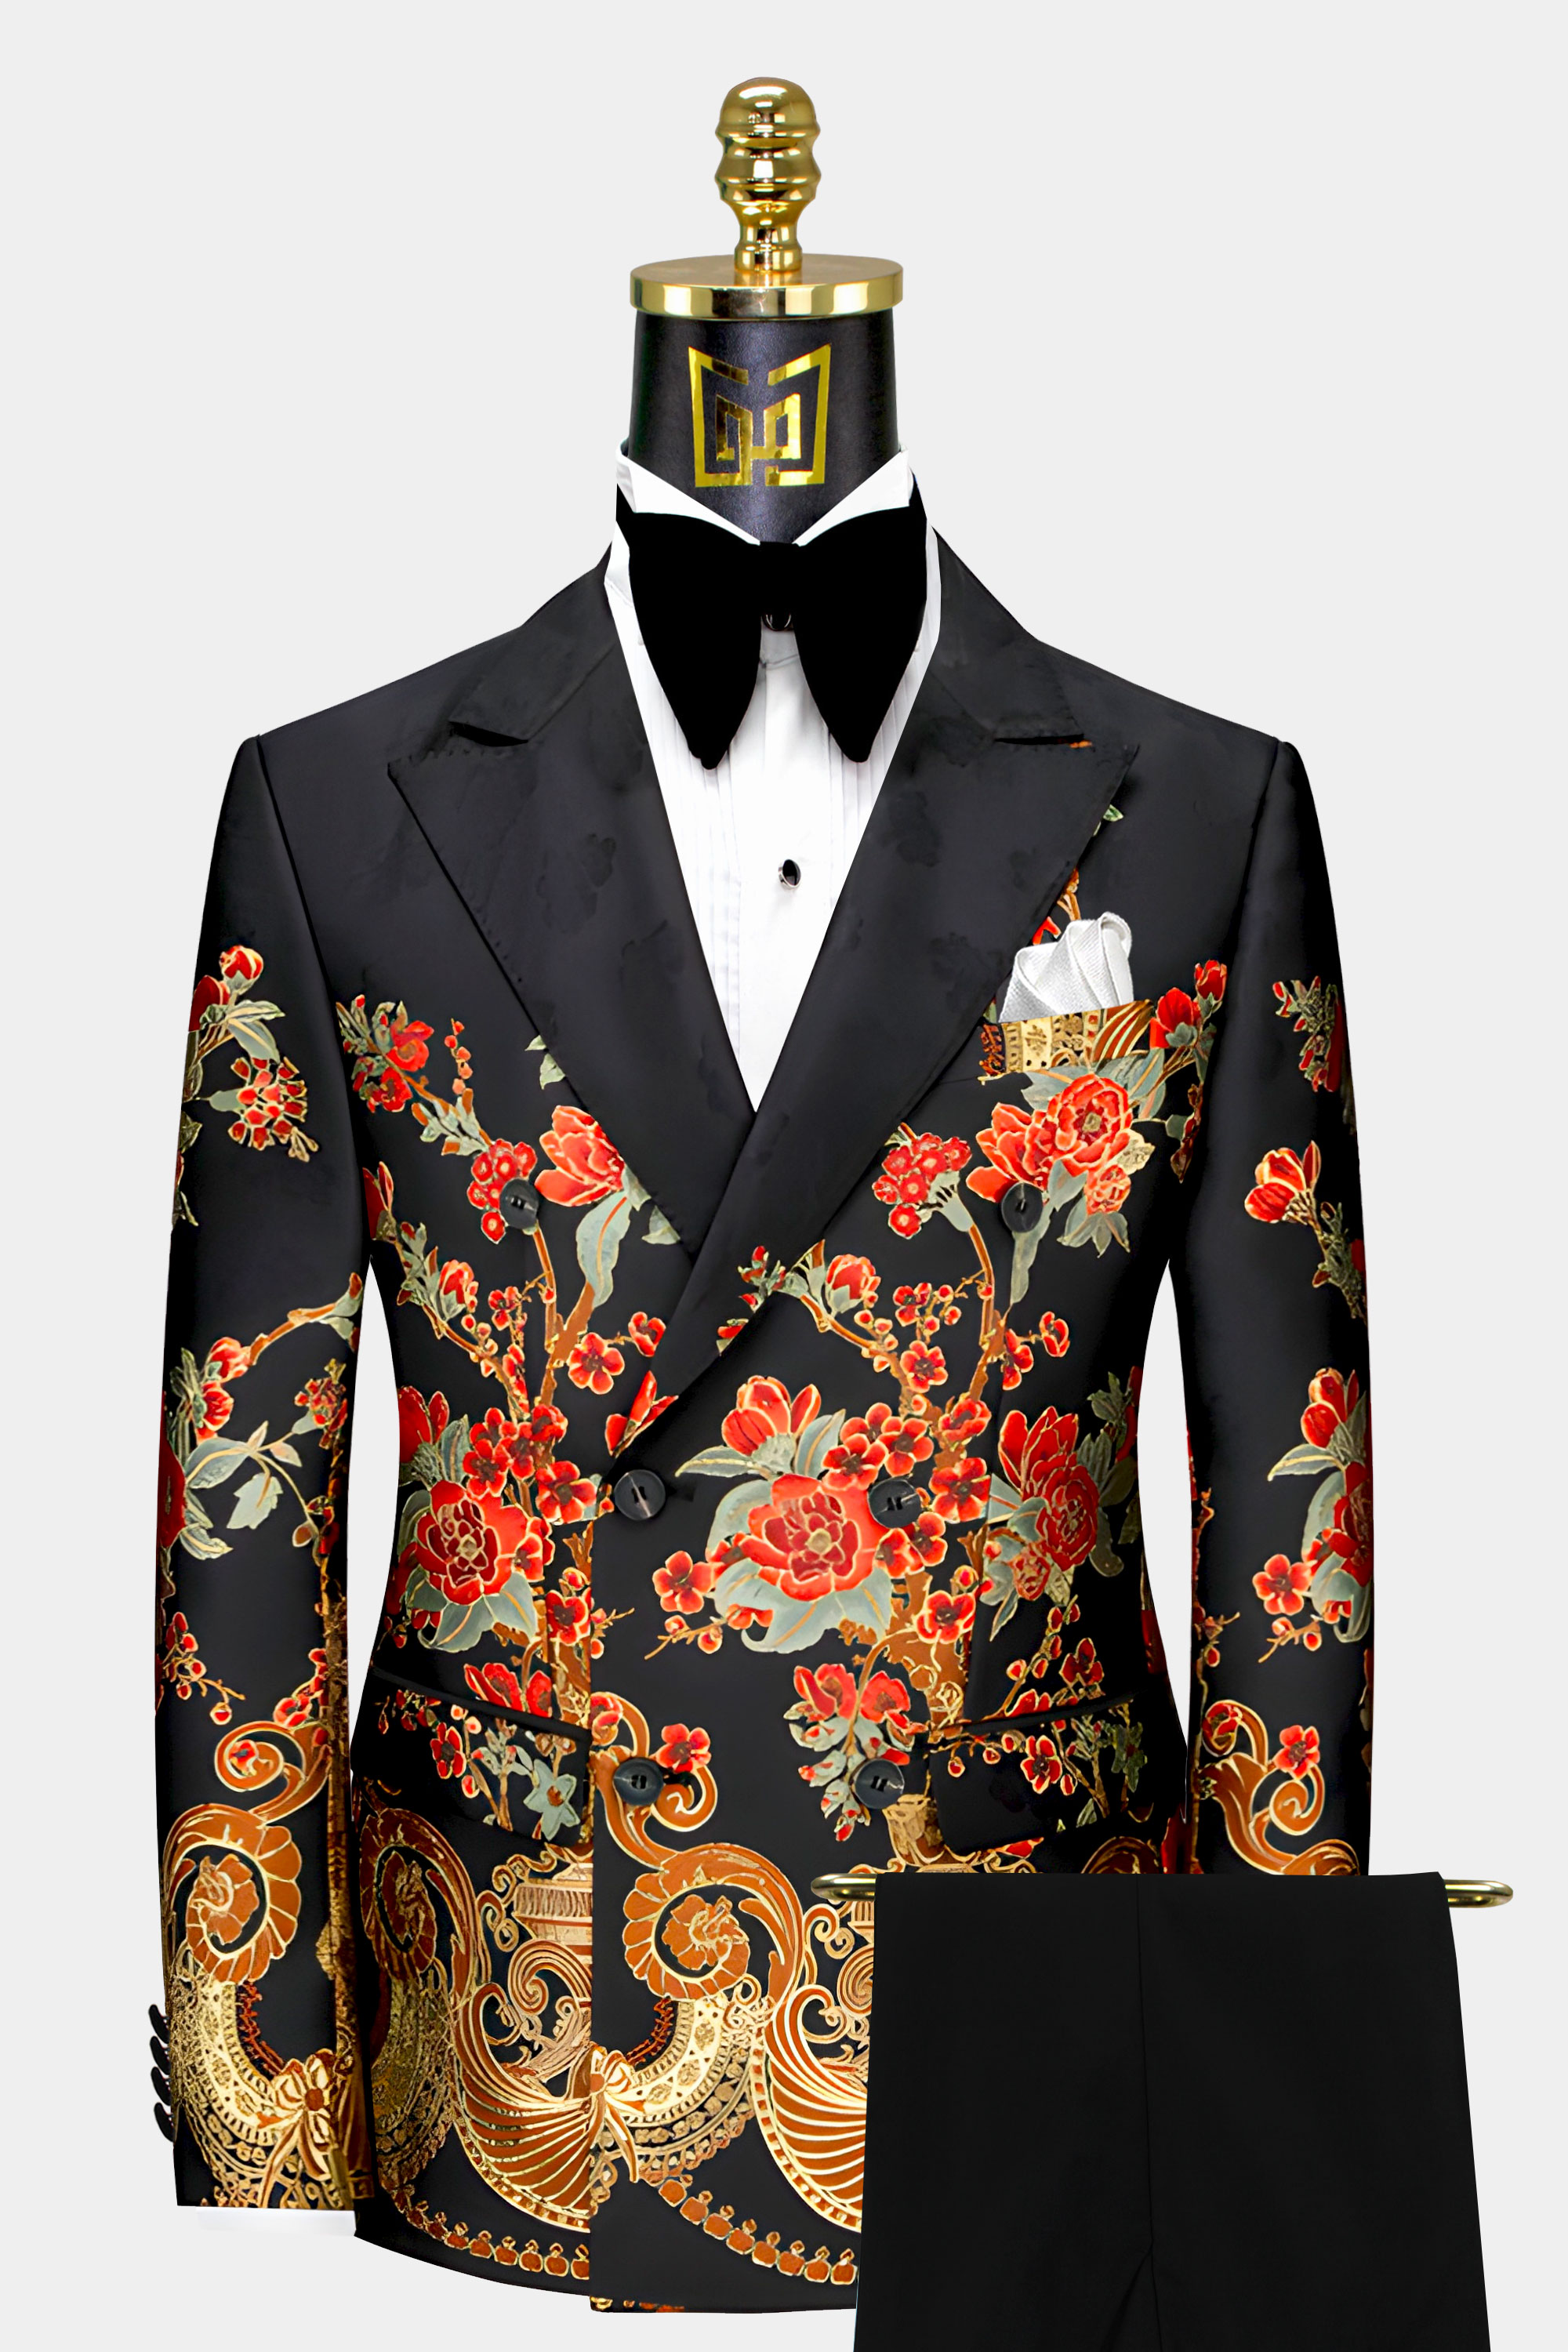 Red-and-Black-Suit-Wedding-Groom-Prom-Suit-from-Gentlemansguru.com